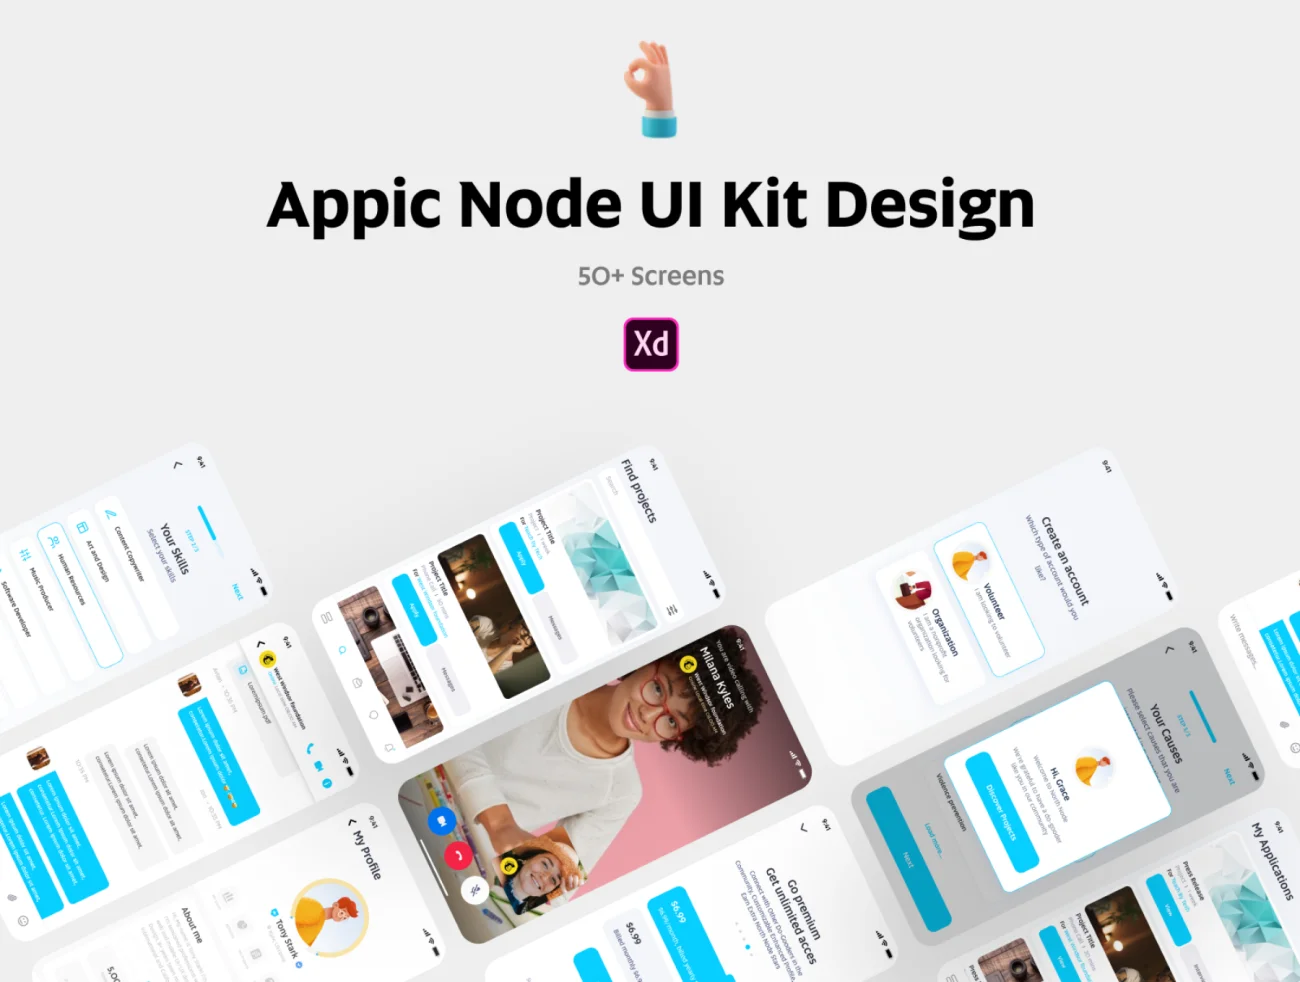 50屏公益非营利组织非政府部门慈善组织志愿者服务应用UI设计套件 Appic Node UI Kit插图1